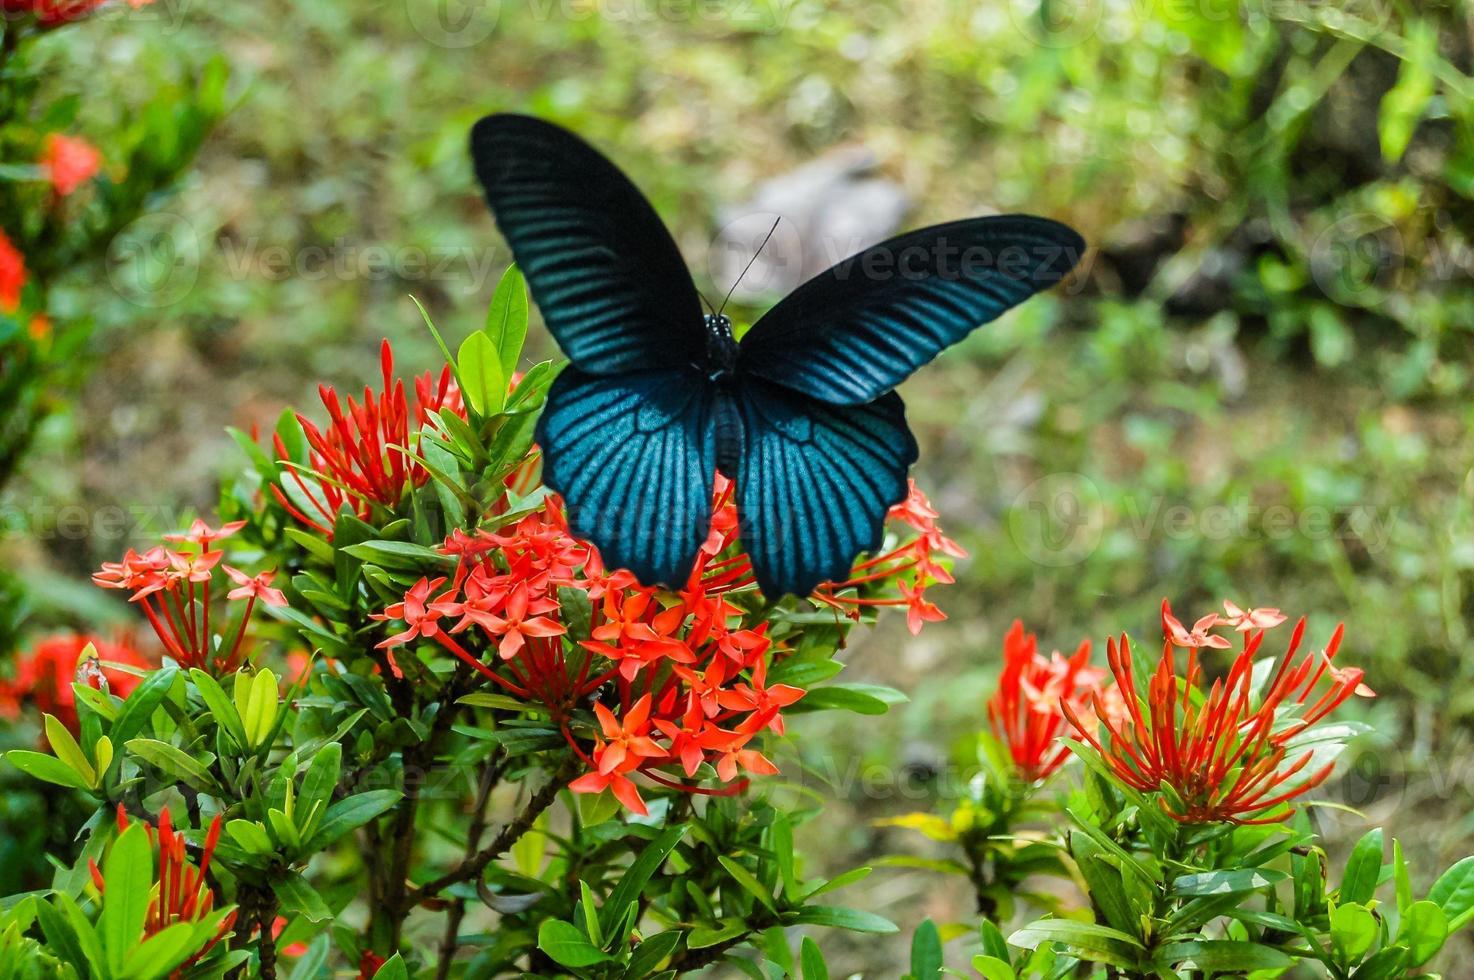 grande farfalla tropicale foto